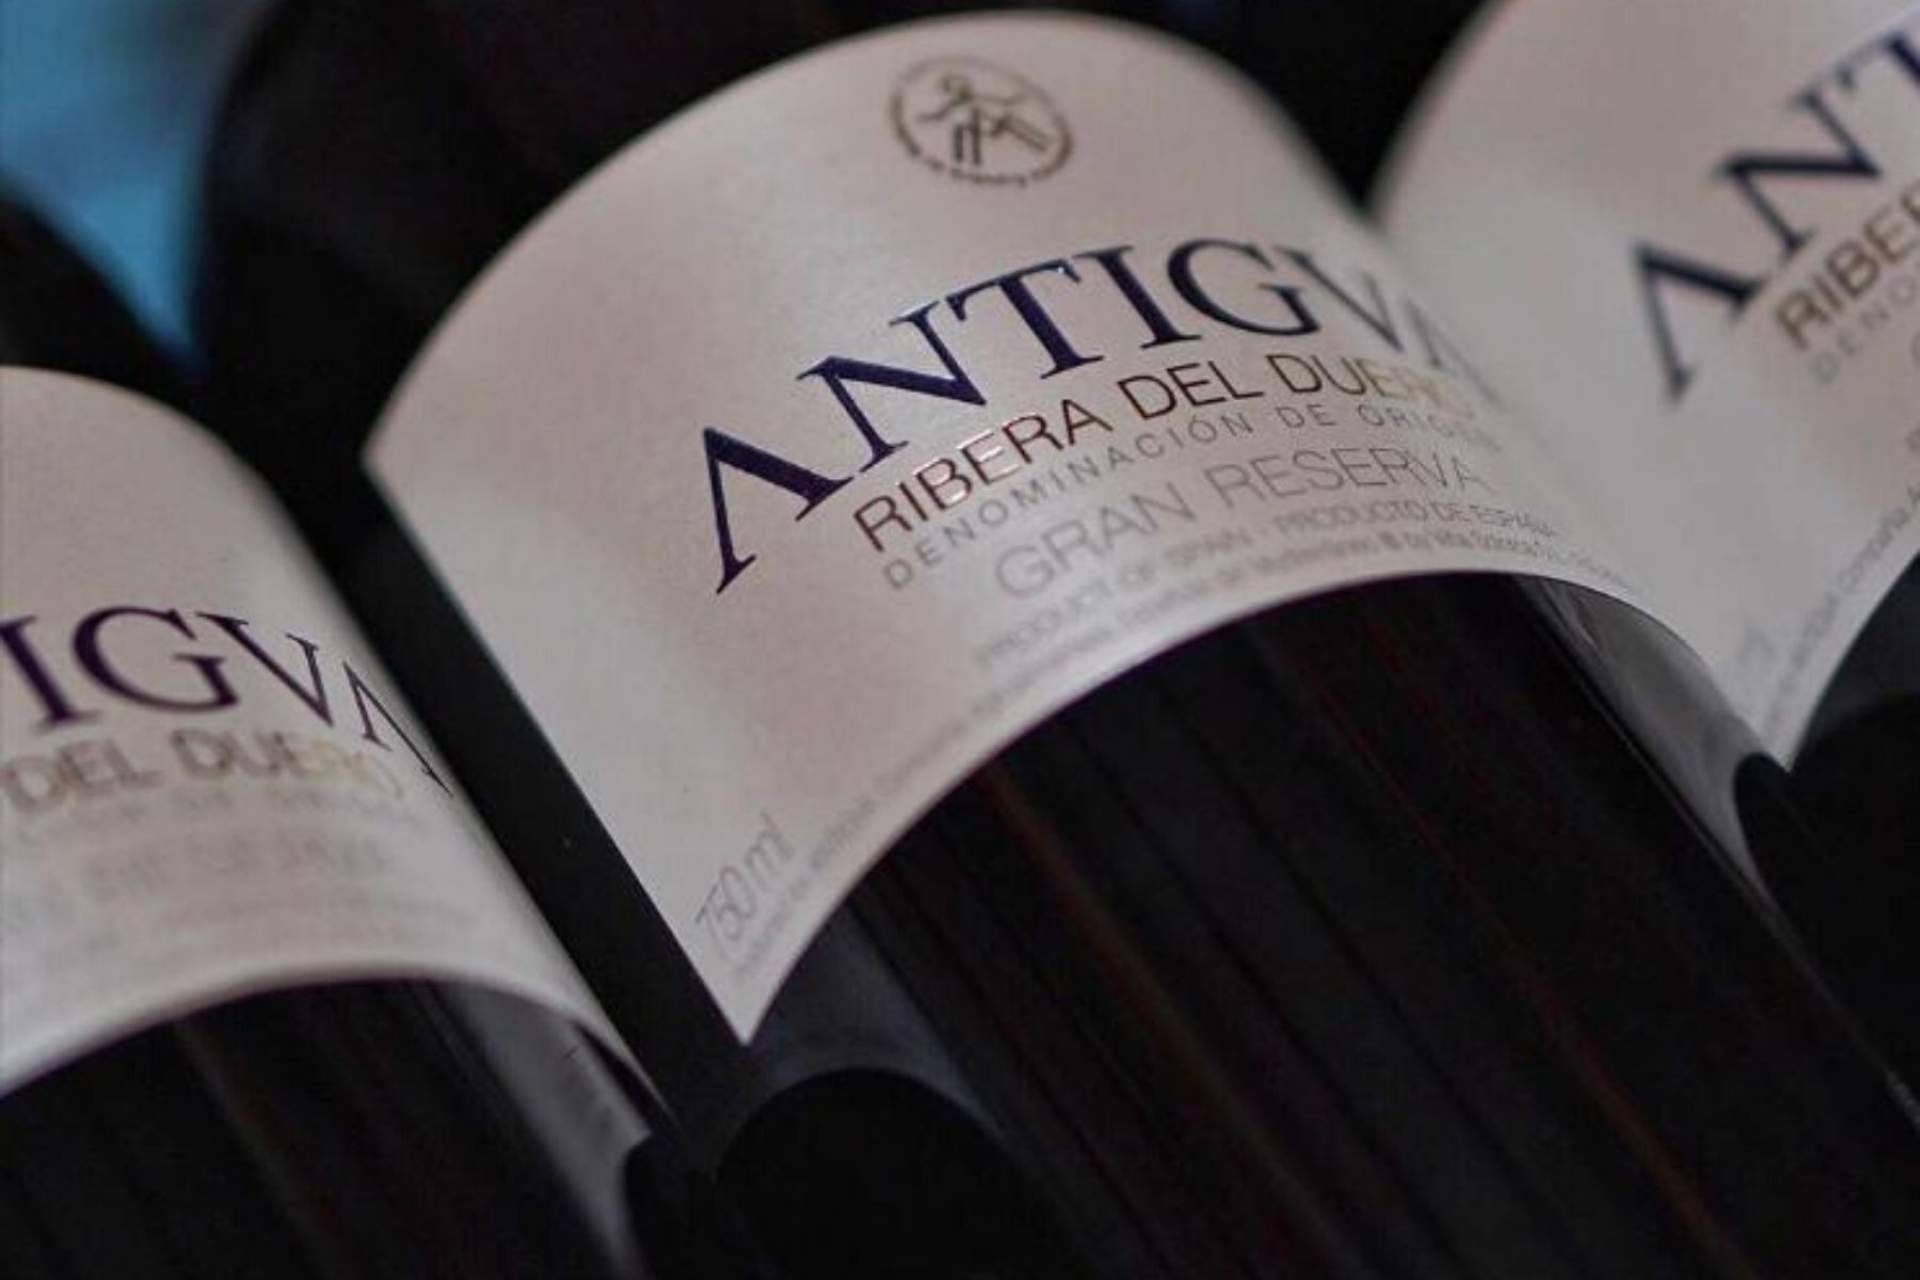 Antigva aporta innovación en el mundo de los vinos